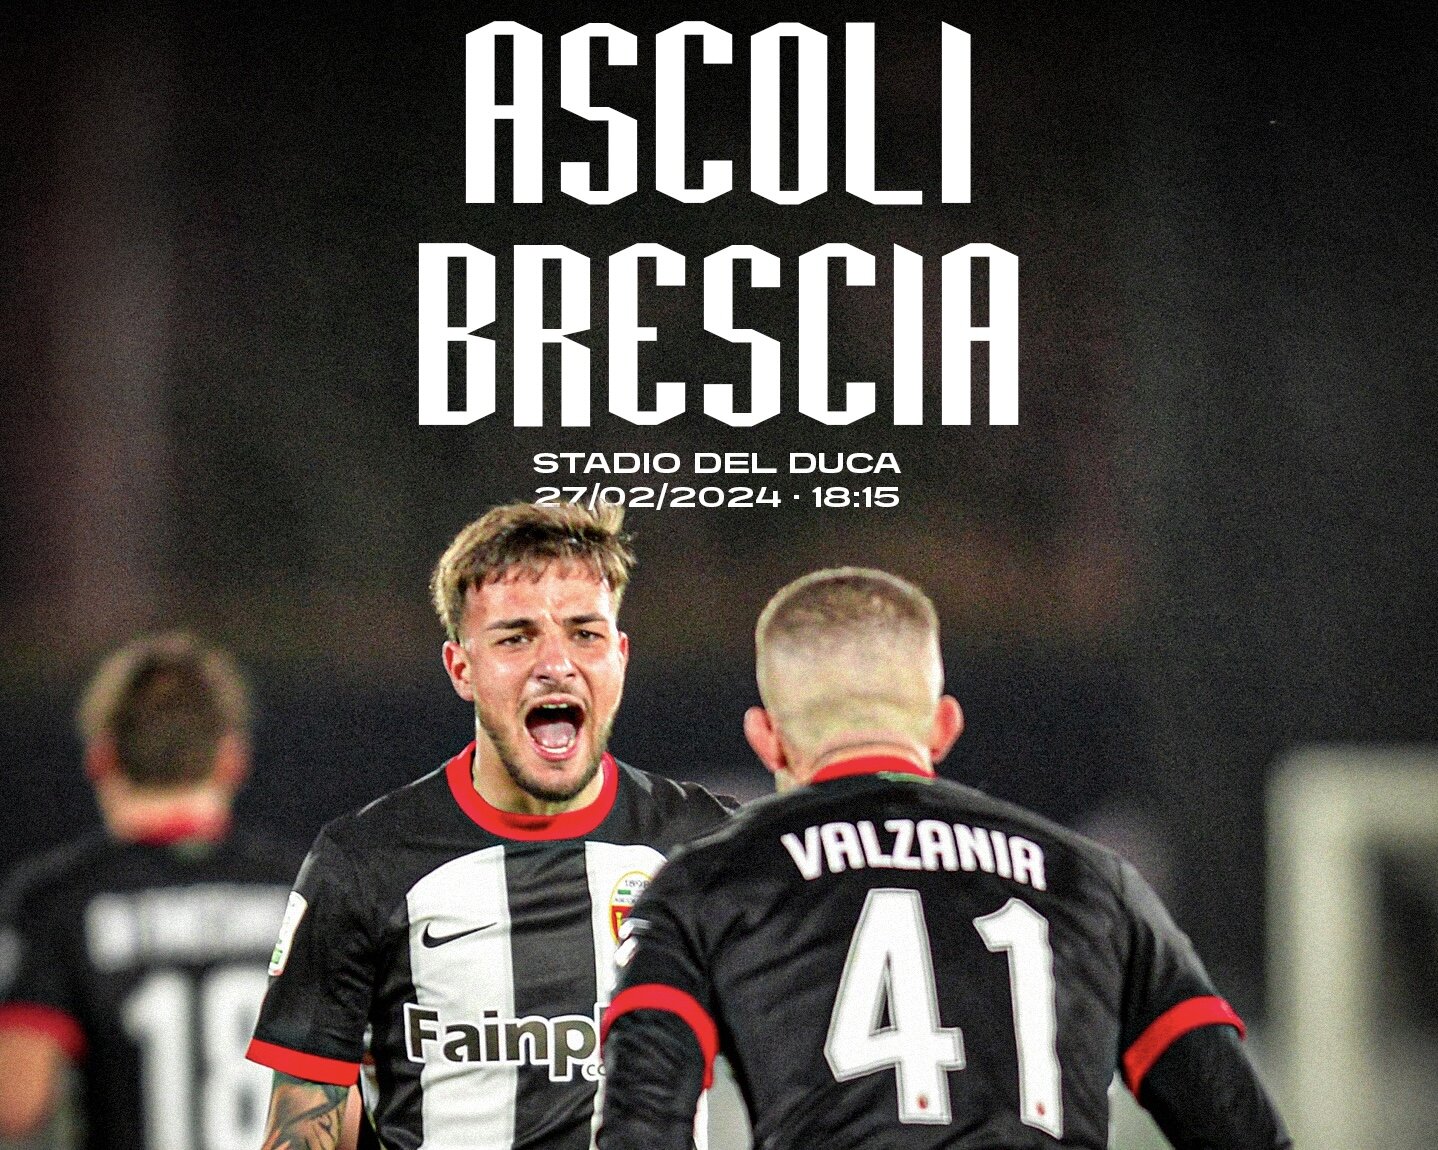 ASCOLI-BRESCIA 1-1